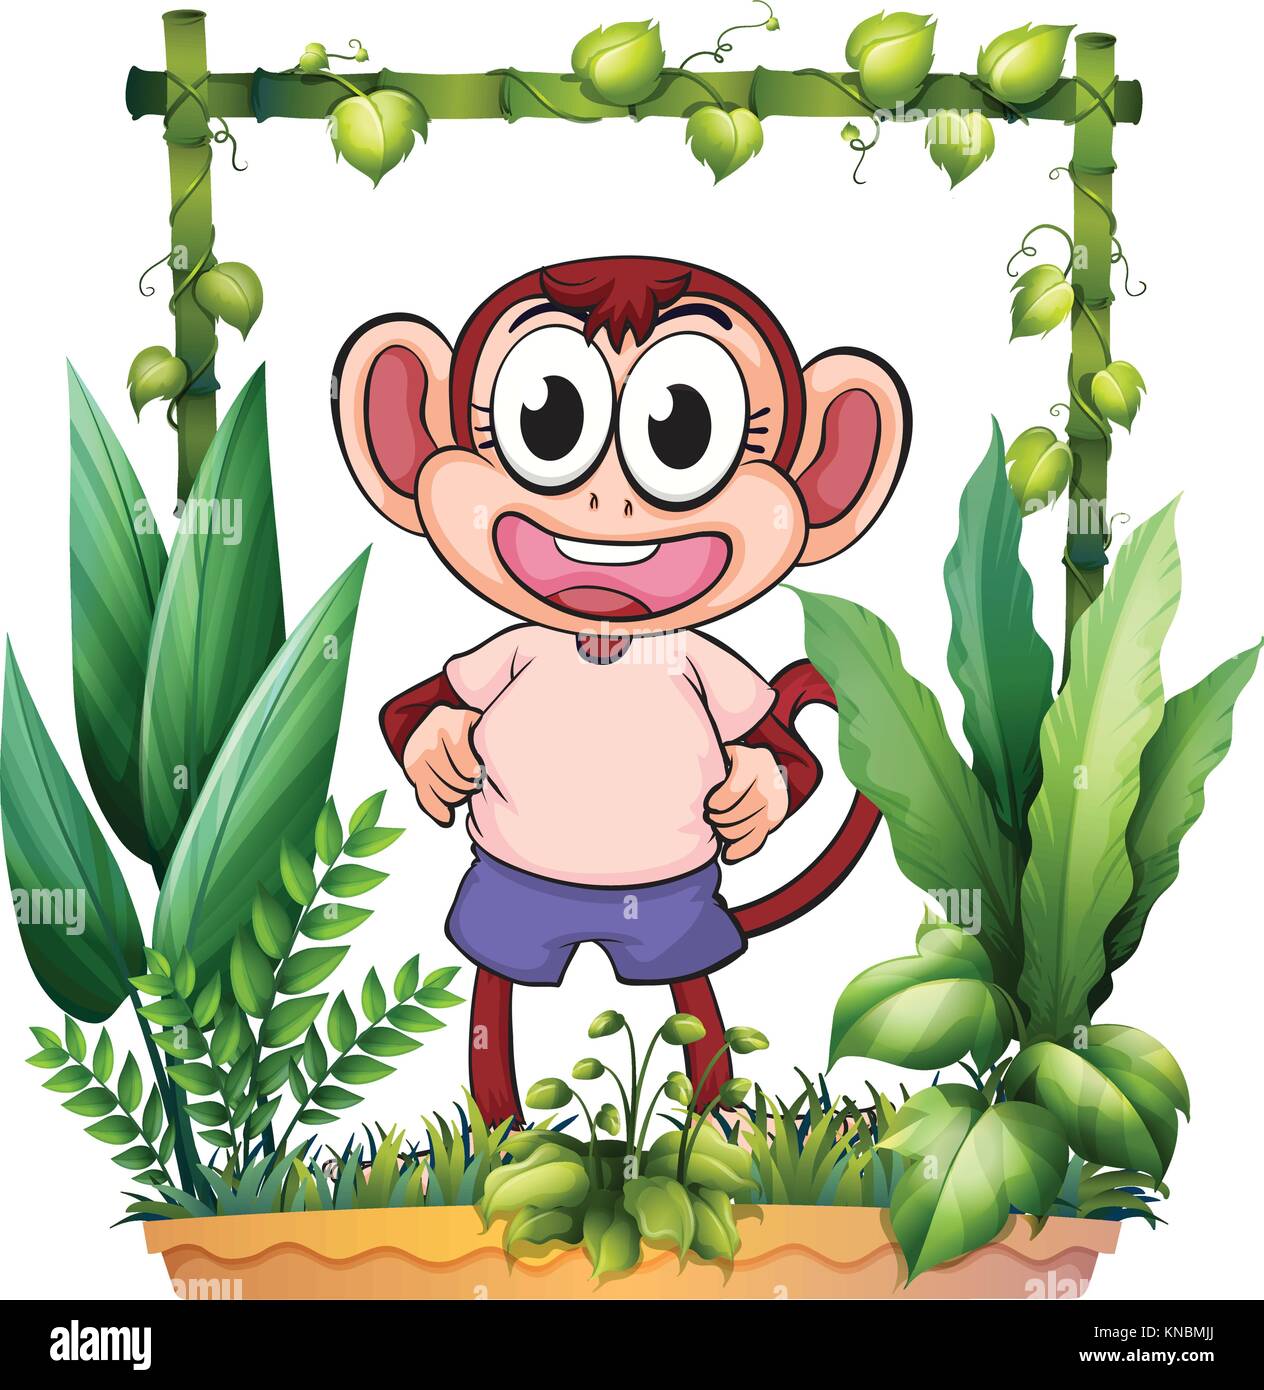 Illustrazione di una scimmia con una maglia rosa su sfondo bianco Illustrazione Vettoriale